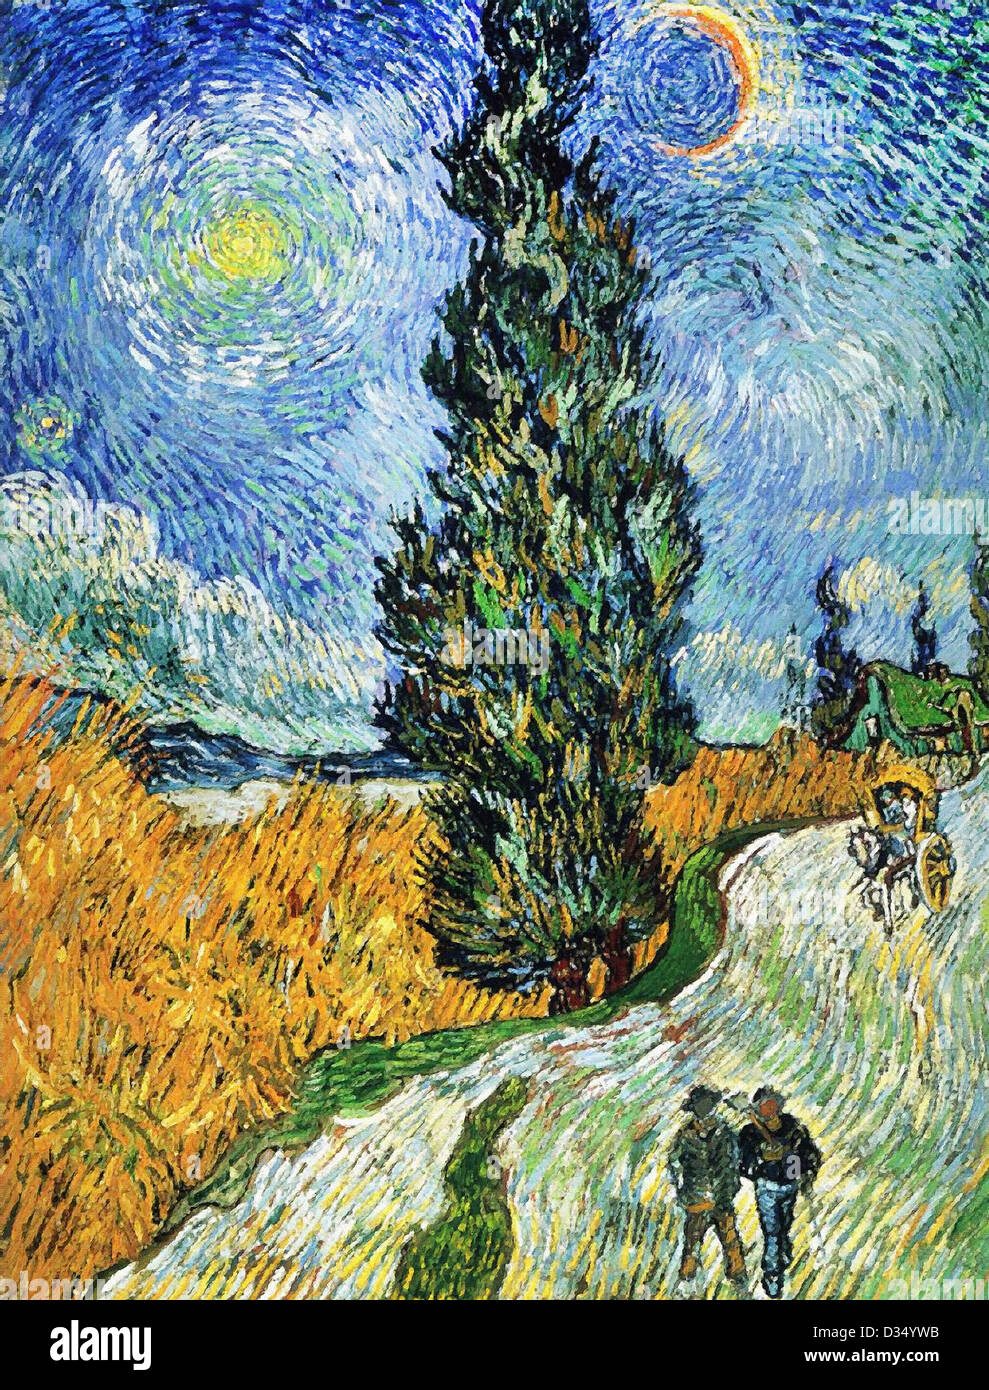 Vincent Van Gogh Straße mit Zypressen. 1890. Post-Impressionismus. Öl auf Leinwand. Rijksmuseum Kröller-Müller, Otterlo, Niederlande Stockfoto